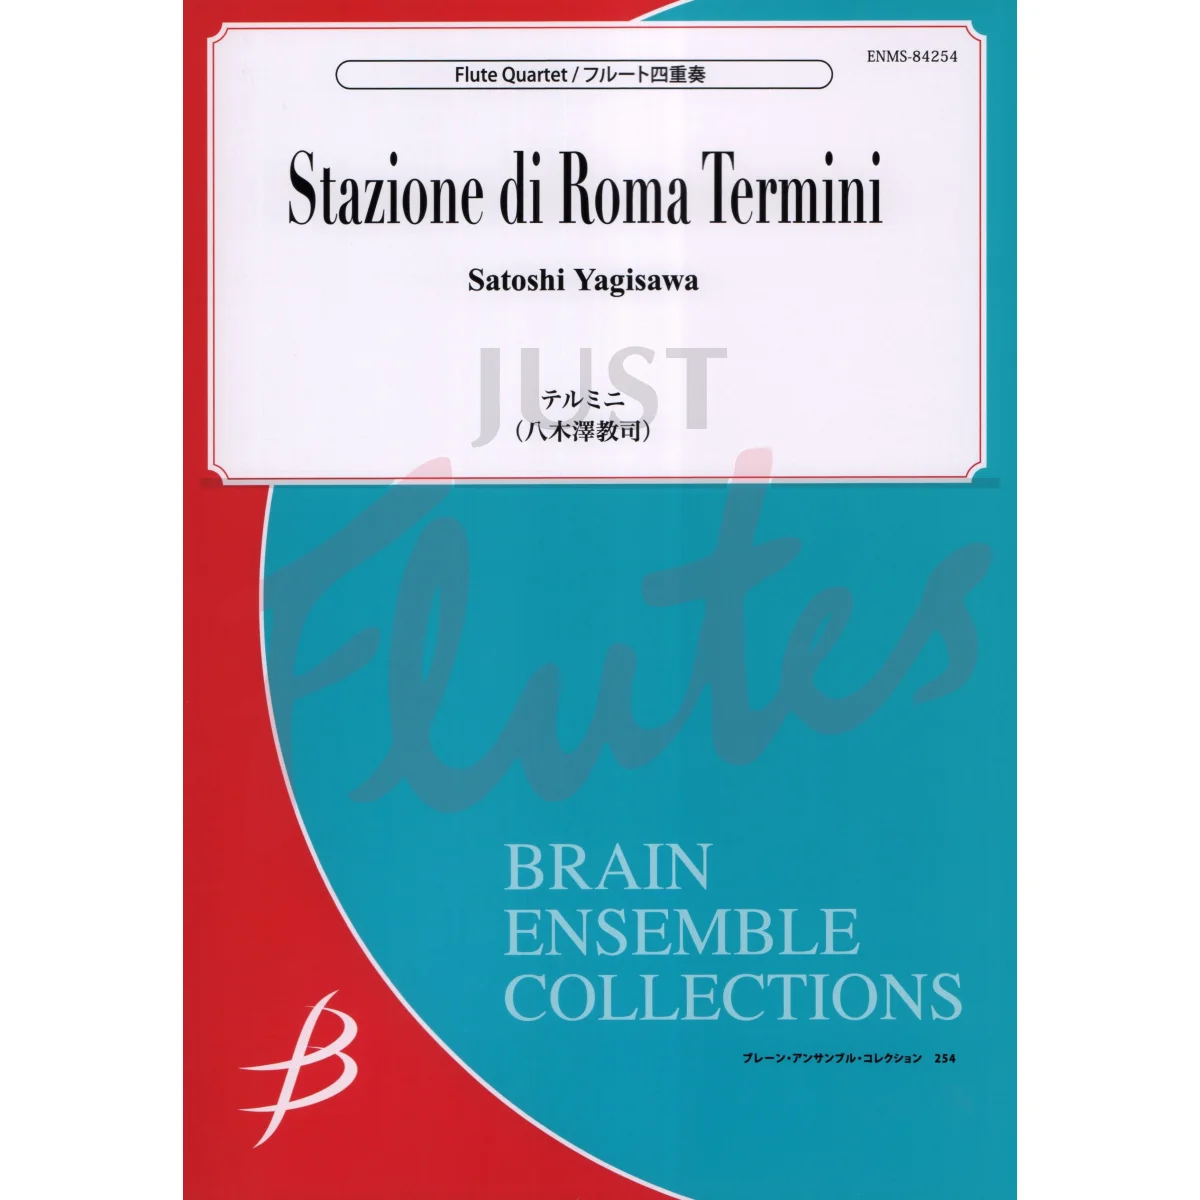 Stazione di Roma Termini for Flute Quartet